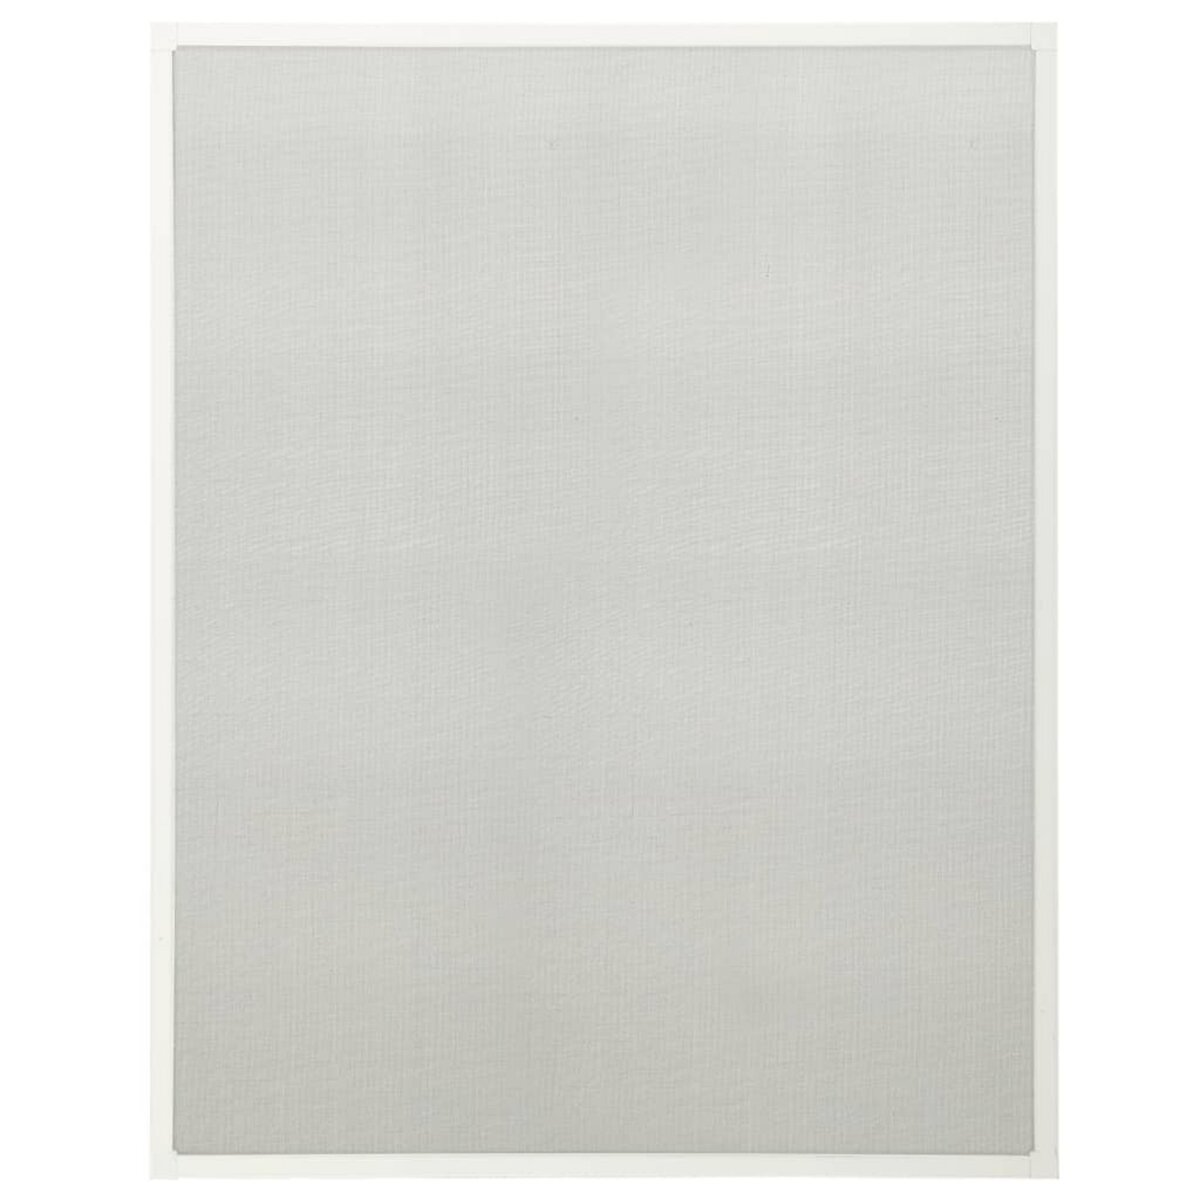 VIDAXL Moustiquaire pour fenetre Blanc 90x120 cm